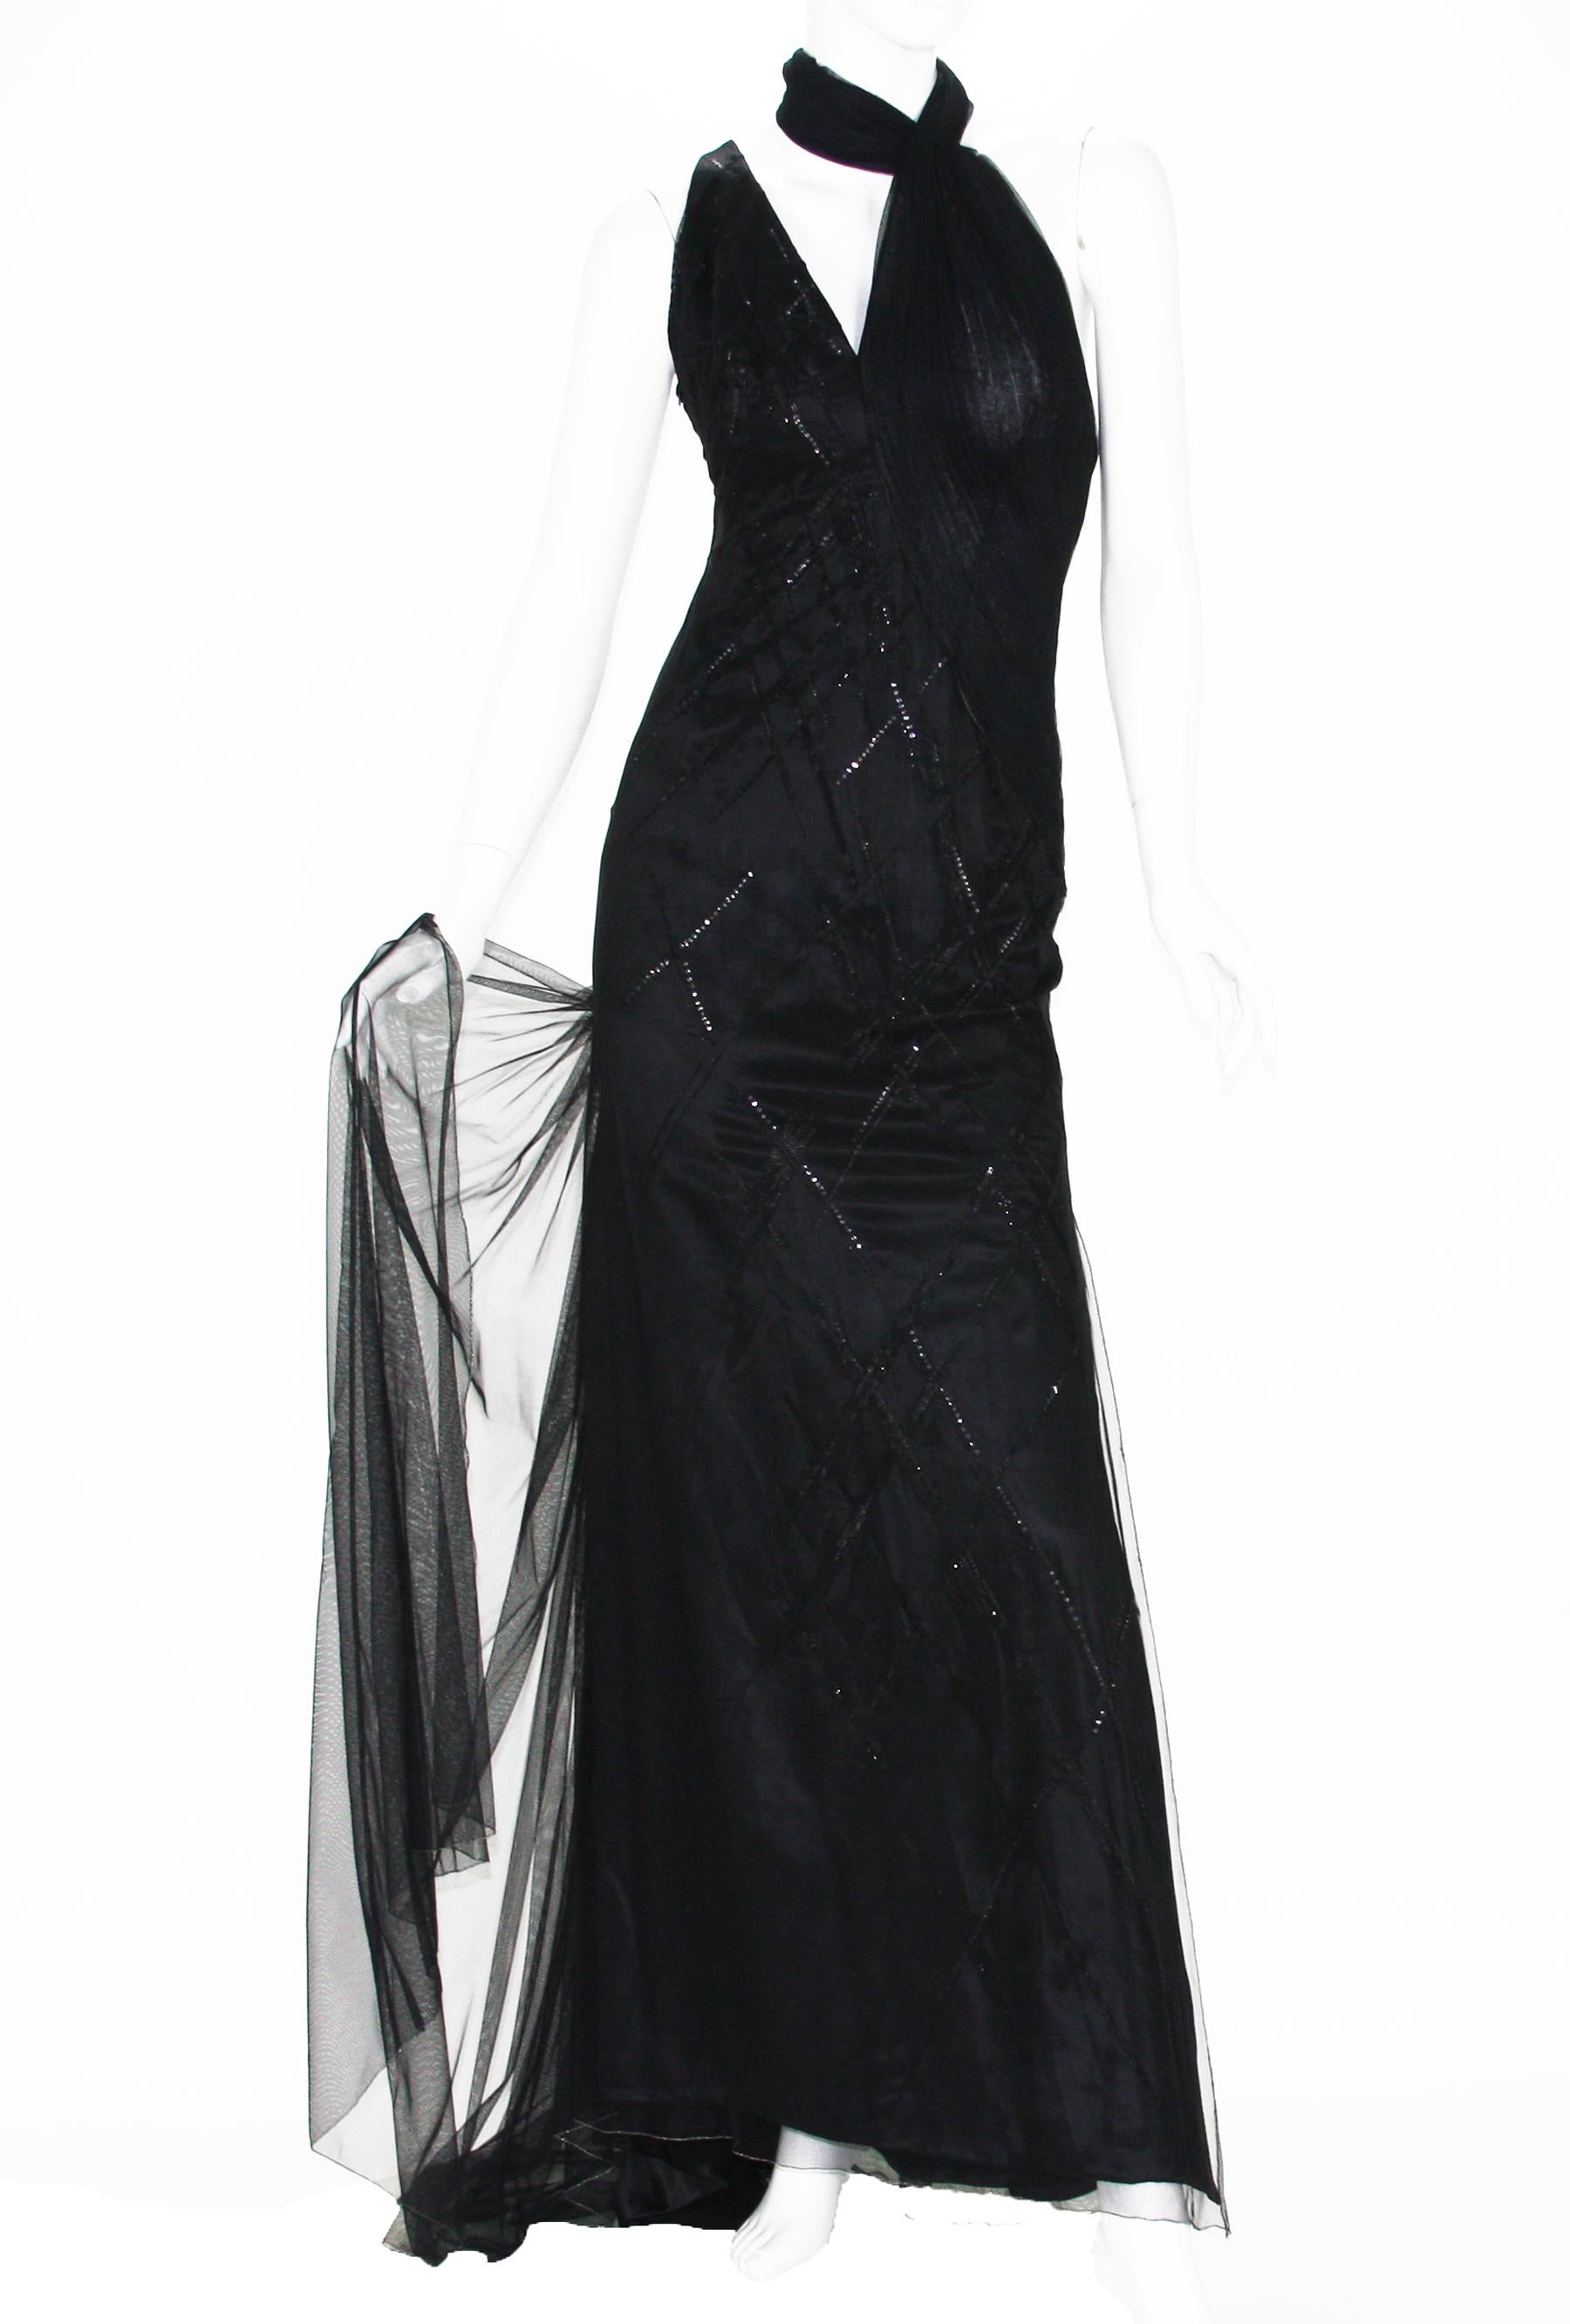 Versace Atelier Schwarz Verschönertes Langes Kleid aus Tüll Abendkleid
CIRCA 90er Jahre 
Designer Größe 42 - bitte Maße überprüfen
Tiefschwarze Seide mit Perlen und Pailletten verziert, schwarzer Tüll bedeckt ganzes Kleid, Plissee-Akzent, in Leotard